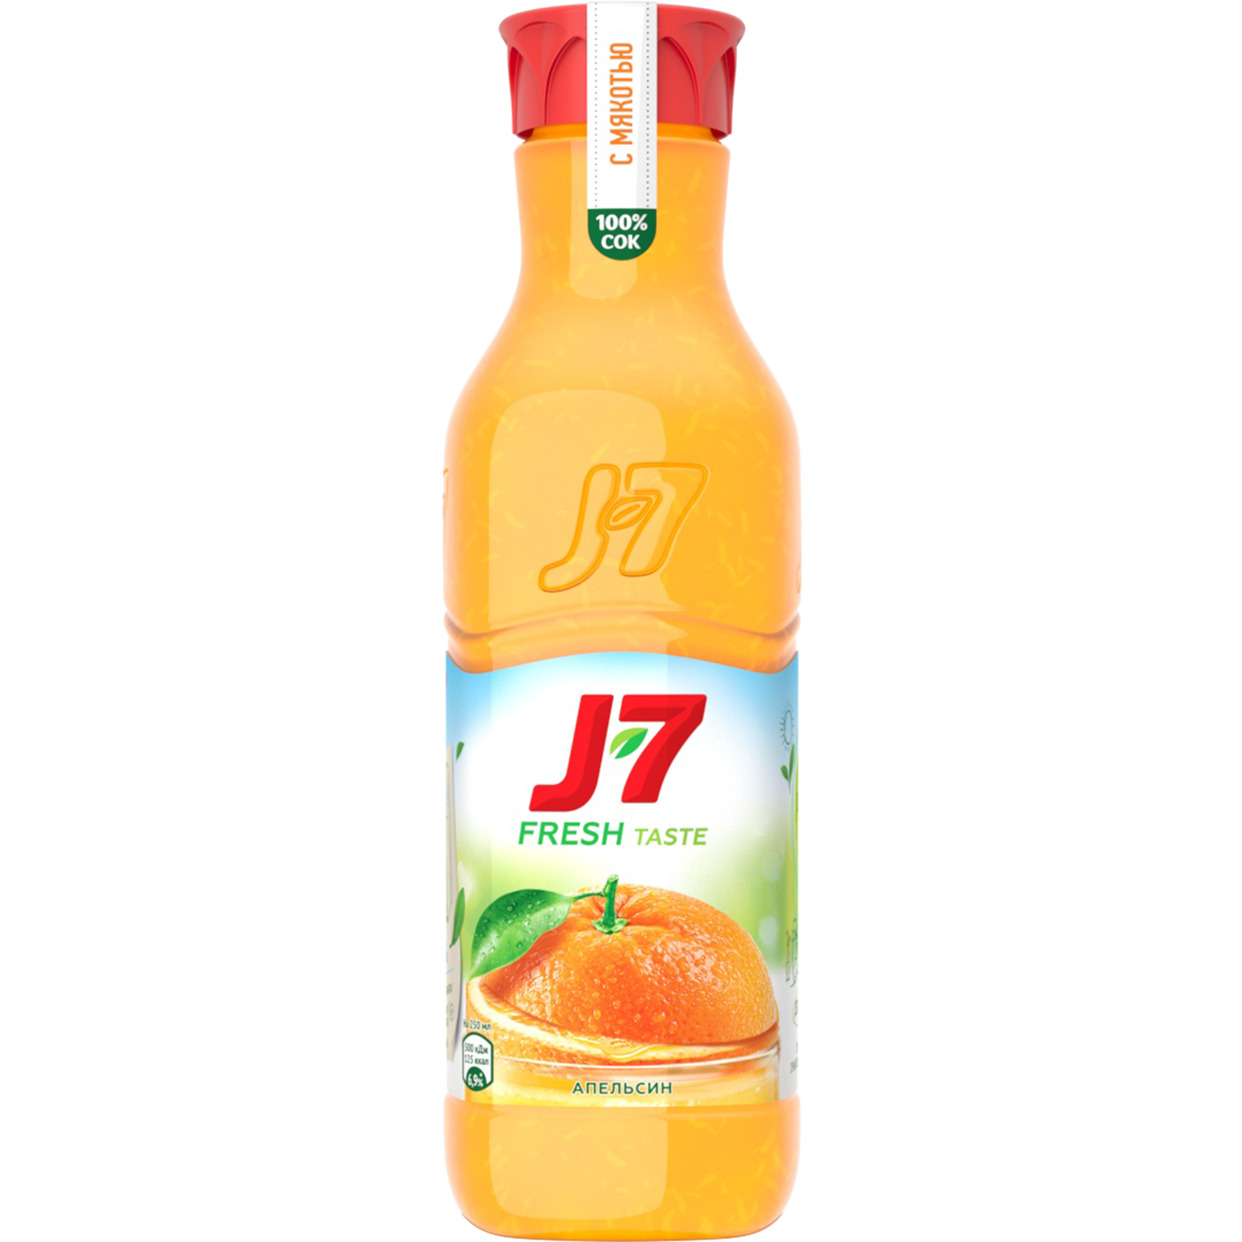 J7 Сок апельсиновый с мякотью для детского питания. Пастеризовнный. 0,85л Бутылка пластик по акции в Пятерочке